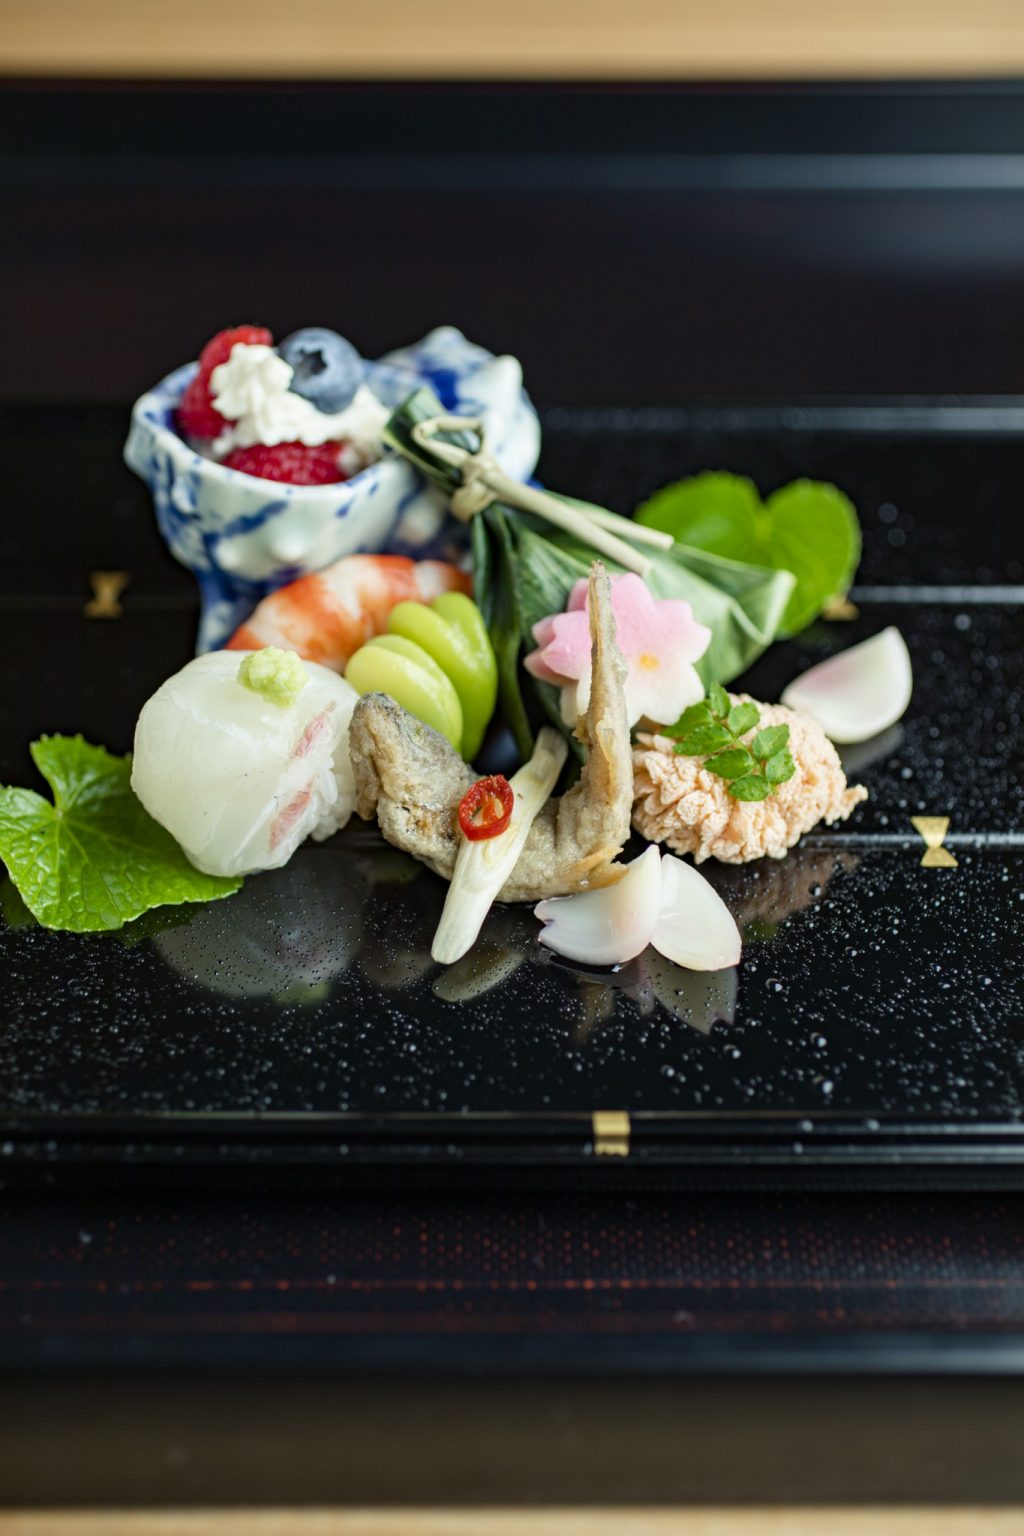 前菜。鯛の手毬寿司、ブルーベリーとラズベリーの白和え、鯛の子など。「お造りは2種類登場。ひと味加えている、 醤油のいらないお刺身（斎藤理子さん）」